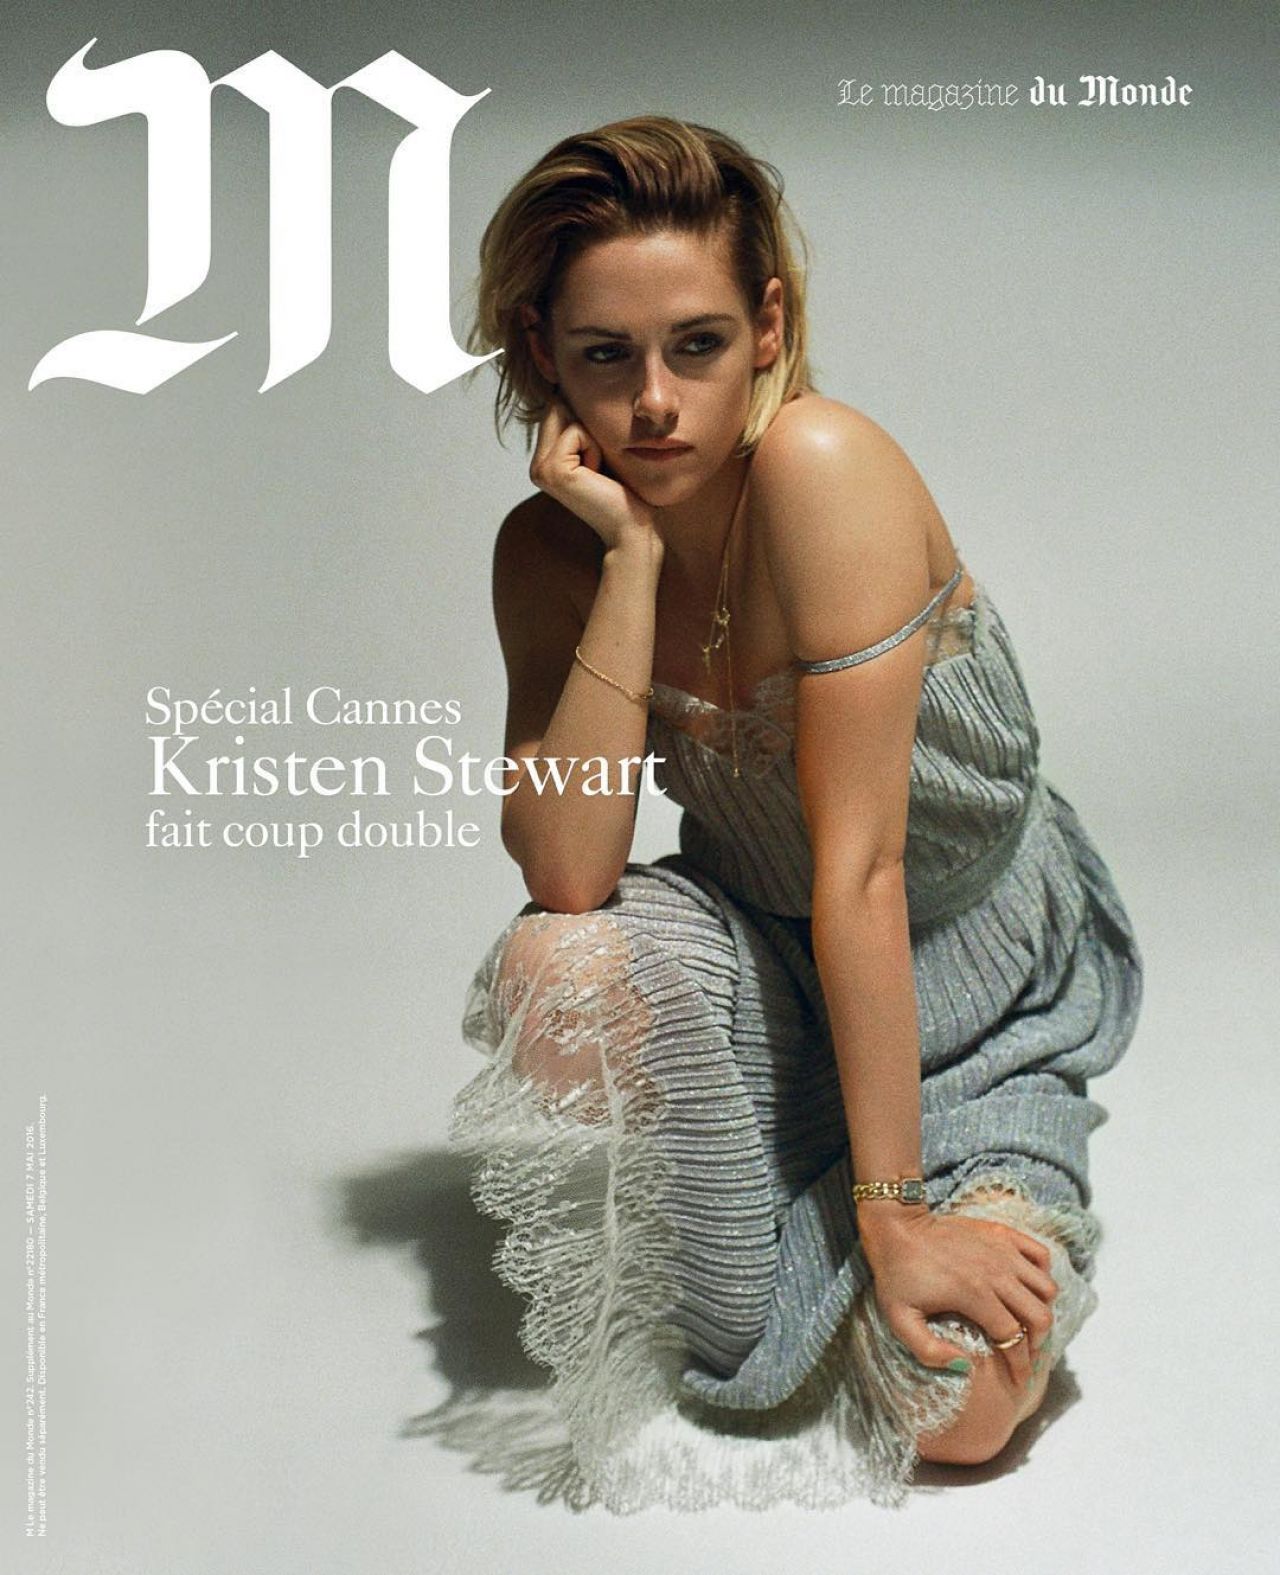 Kristen Stewart Photoshoot For M Magazine Cannes Film